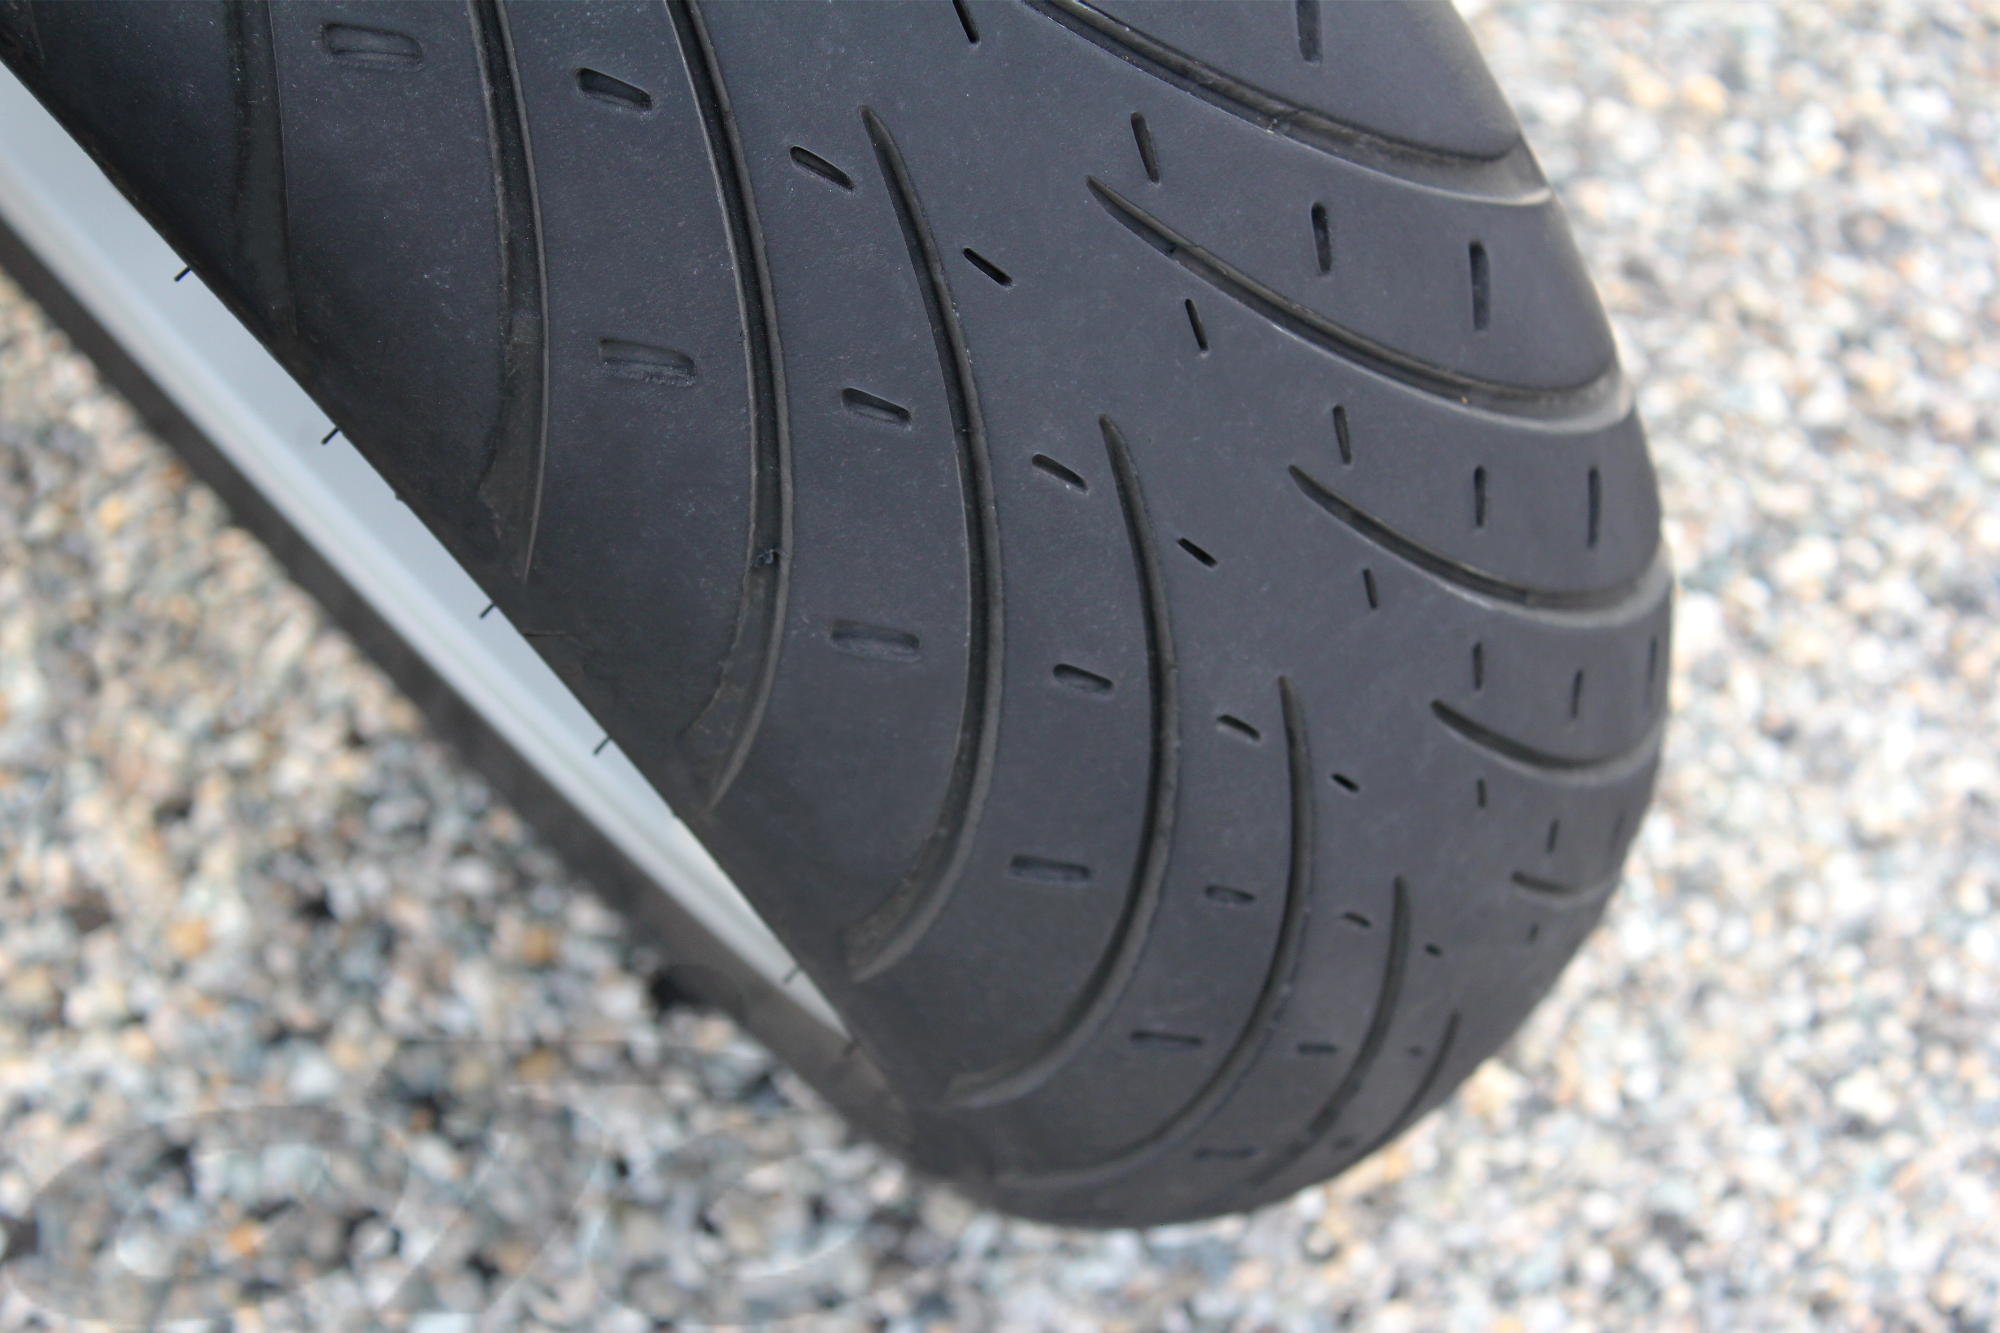 El neumático trasero es bigoma, mientras que el neumático delantero utiliza la goma más blanda que encontramos en las pestañas traseras